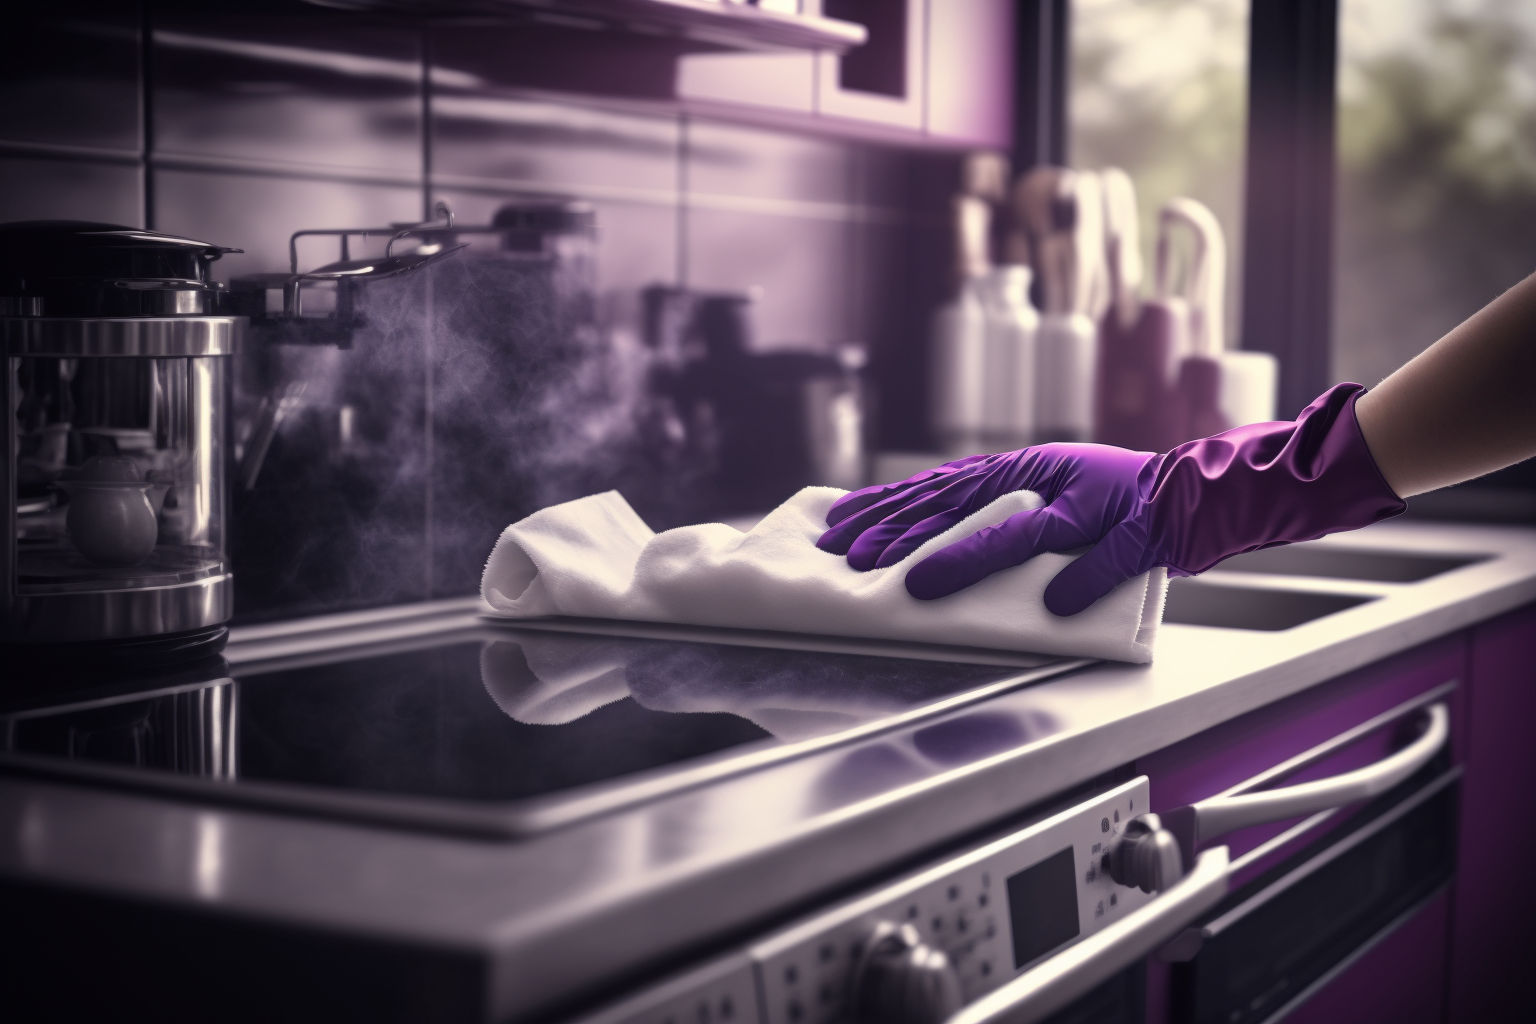 Muuttosiivousta tekevä muuttosiivooja pyyhkii keittiön tasoa violetti hanska kädessään muuttosiivouksen yhteydessä, violetti keittiö.